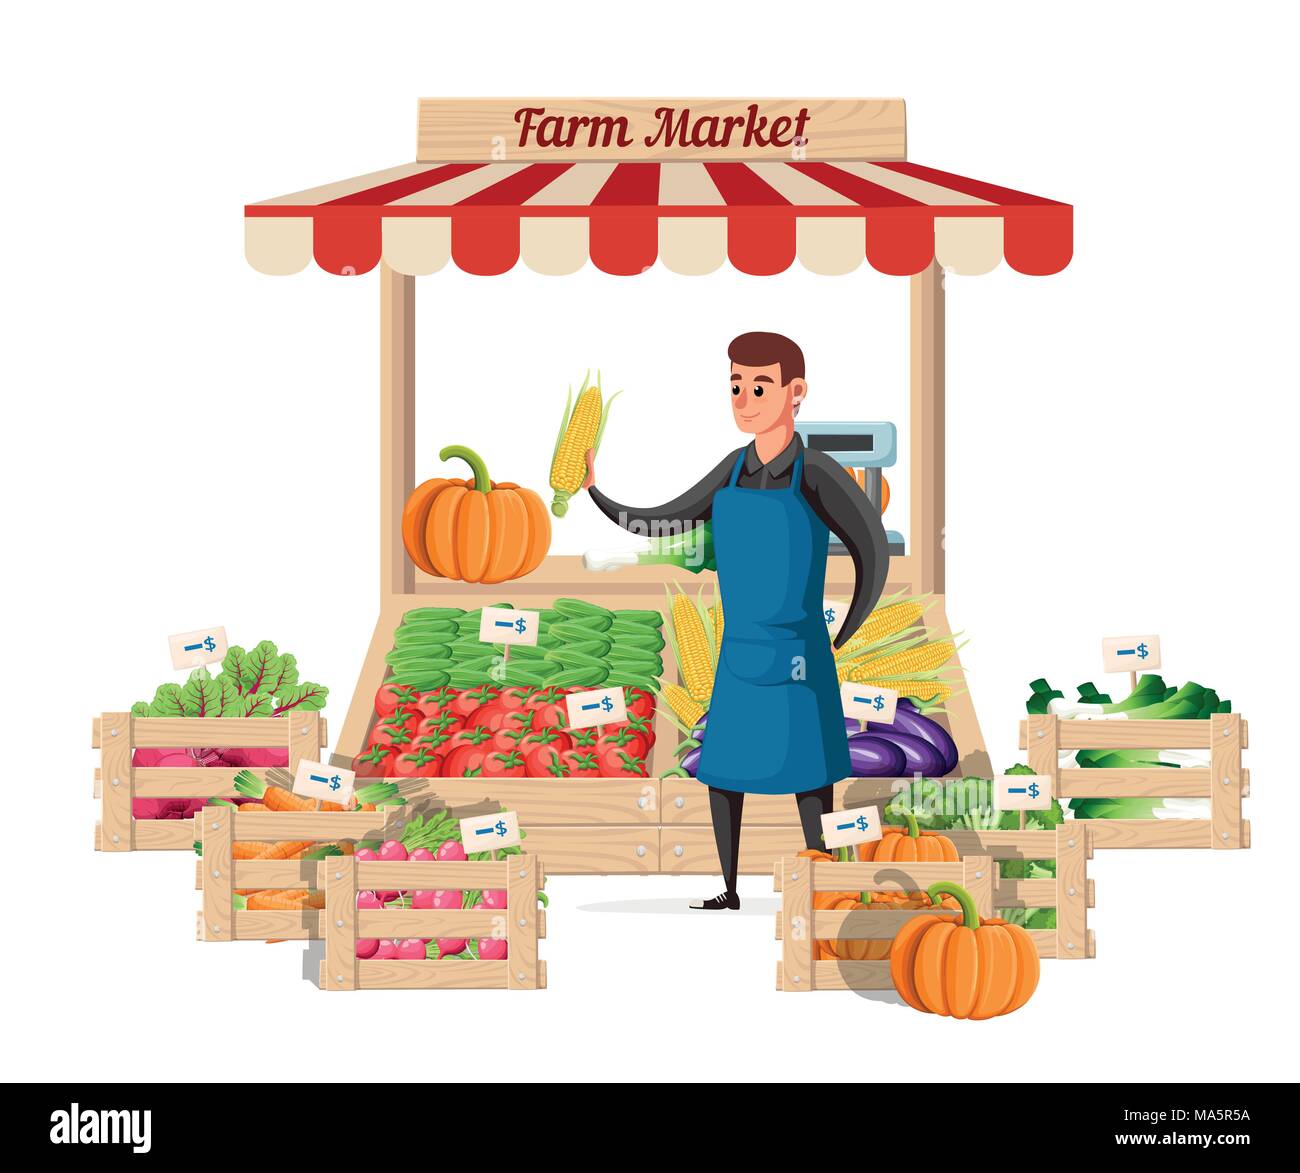 Agriculteur vendeur de légumes au guichet ferme d'aliments biologiques. Vendeur de rue avec cabine avec légumes. Vector illustration isolé sur fond blanc. W Illustration de Vecteur